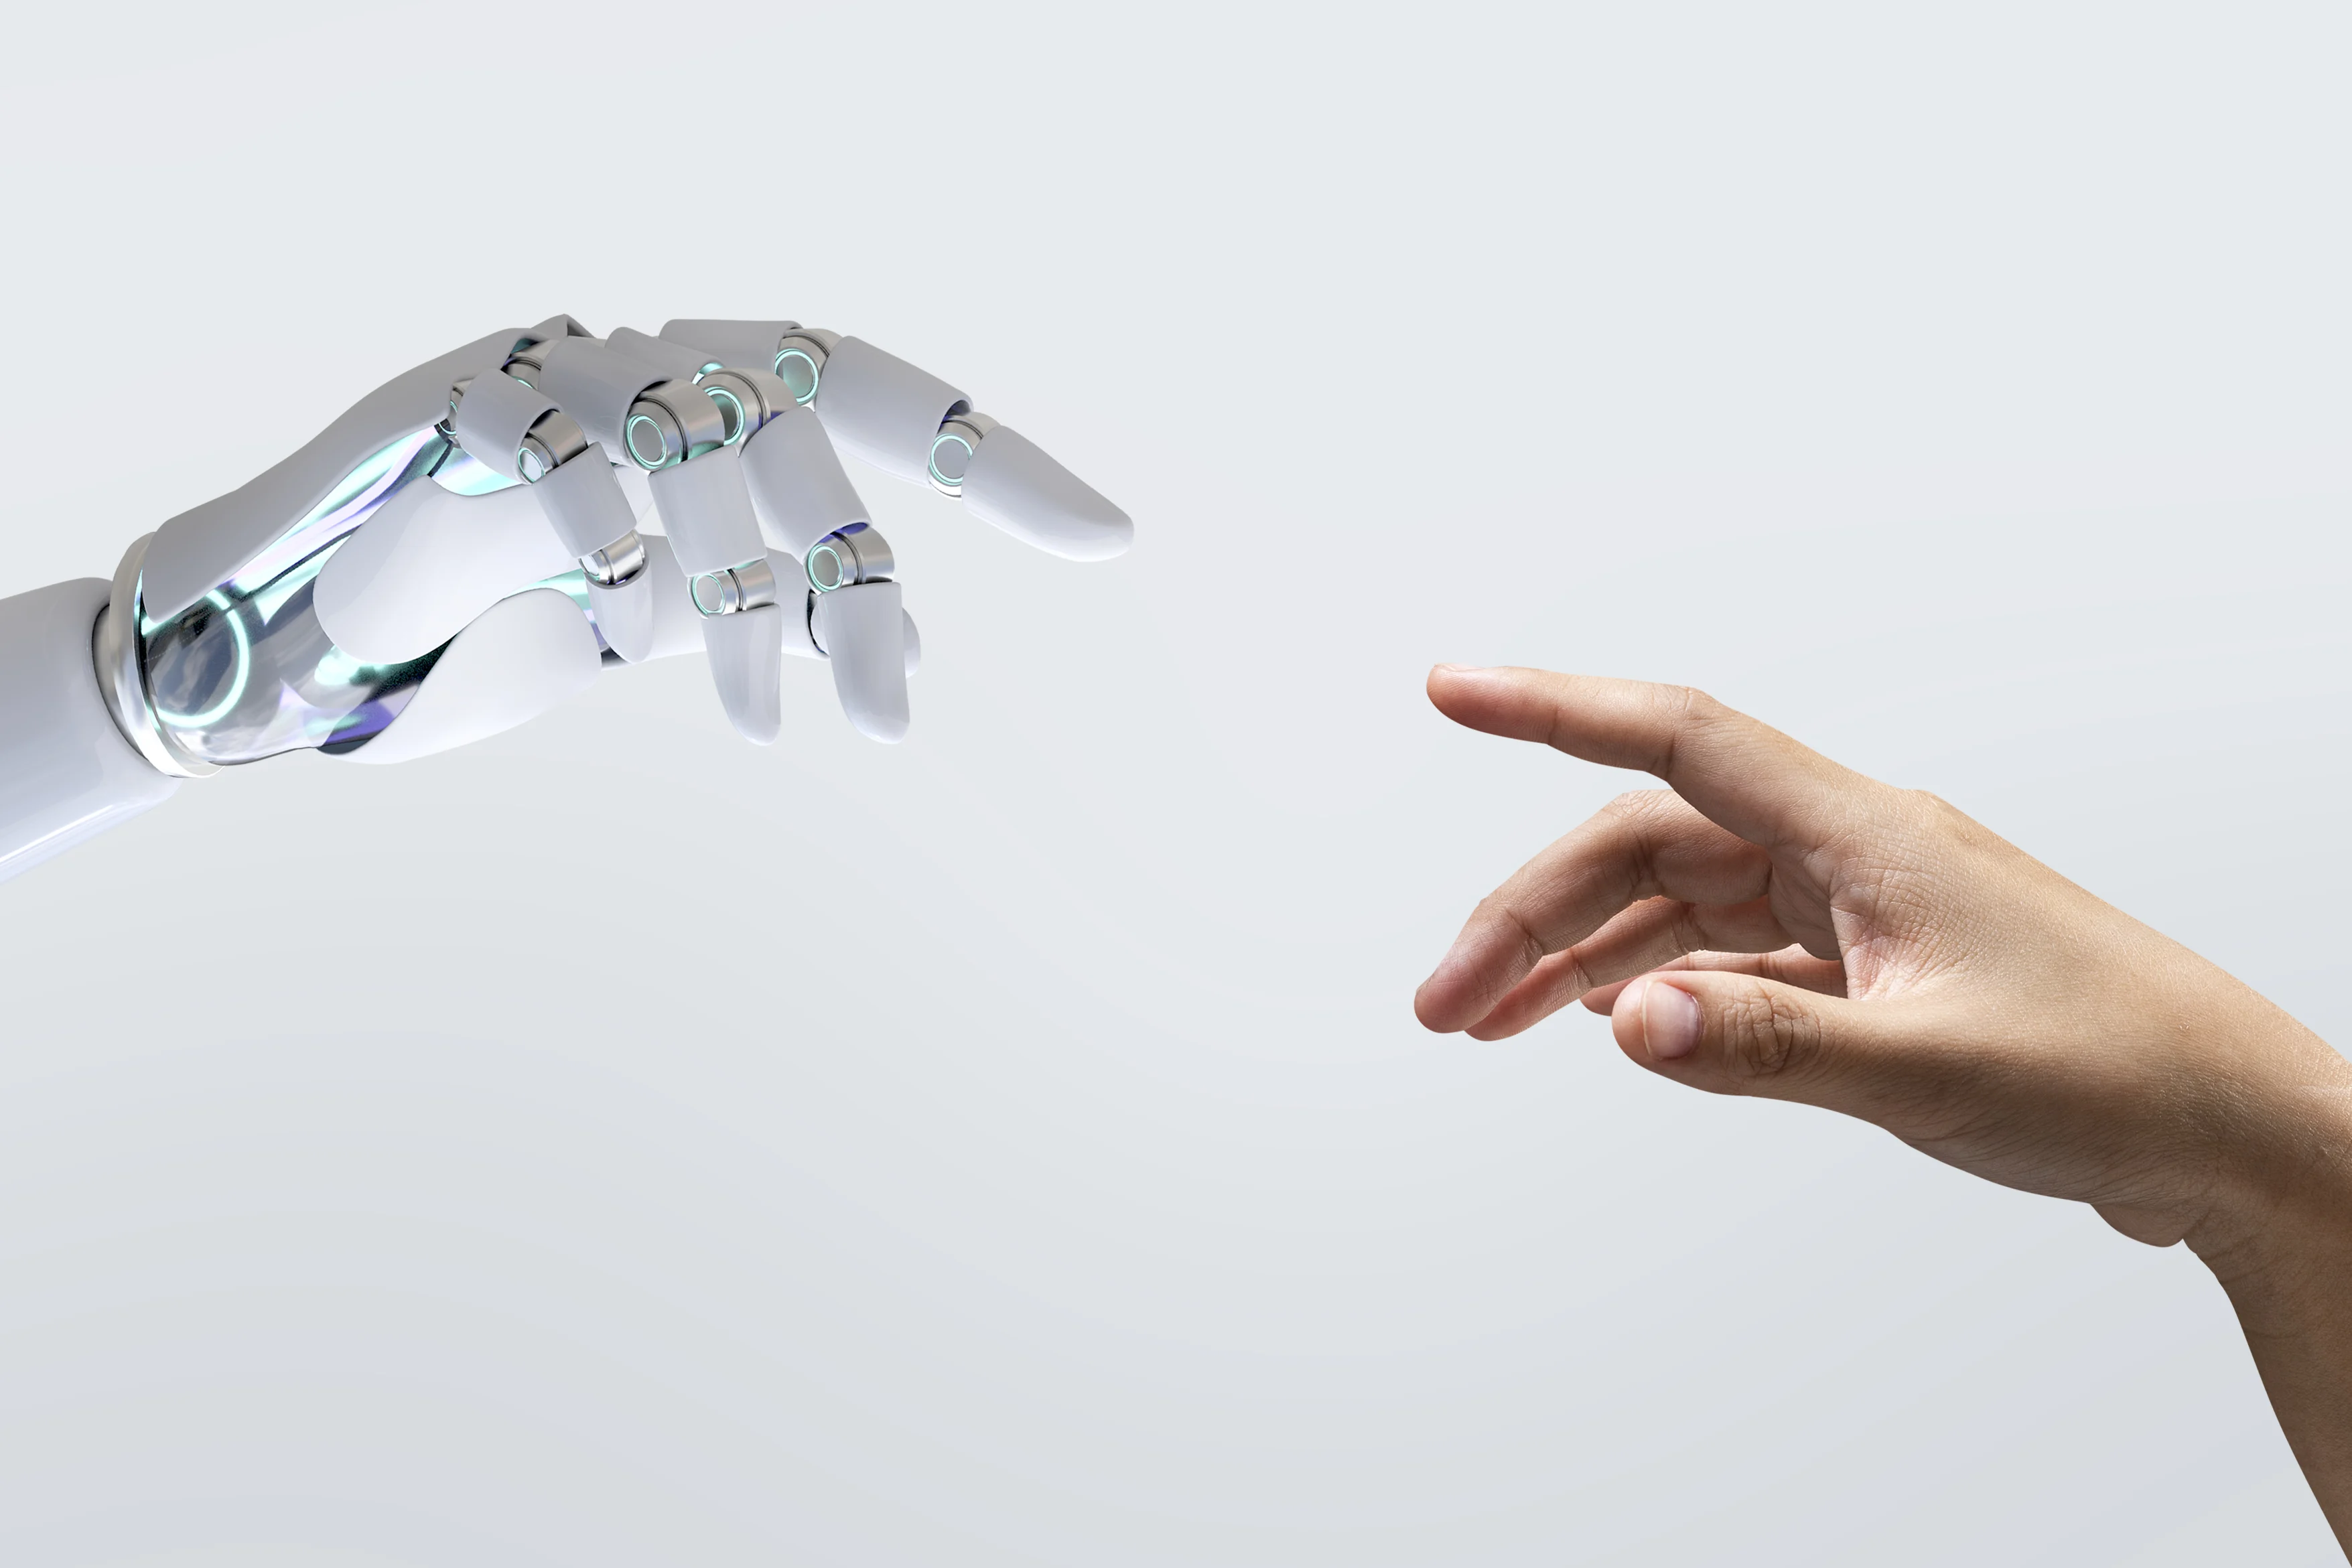  Durch Automatisierung und Digitalisierung übernehmen Maschinen und Roboter zunehmend Arbeiten, die Hard Skills erfordern, d.h. (technisches) Fachwissen